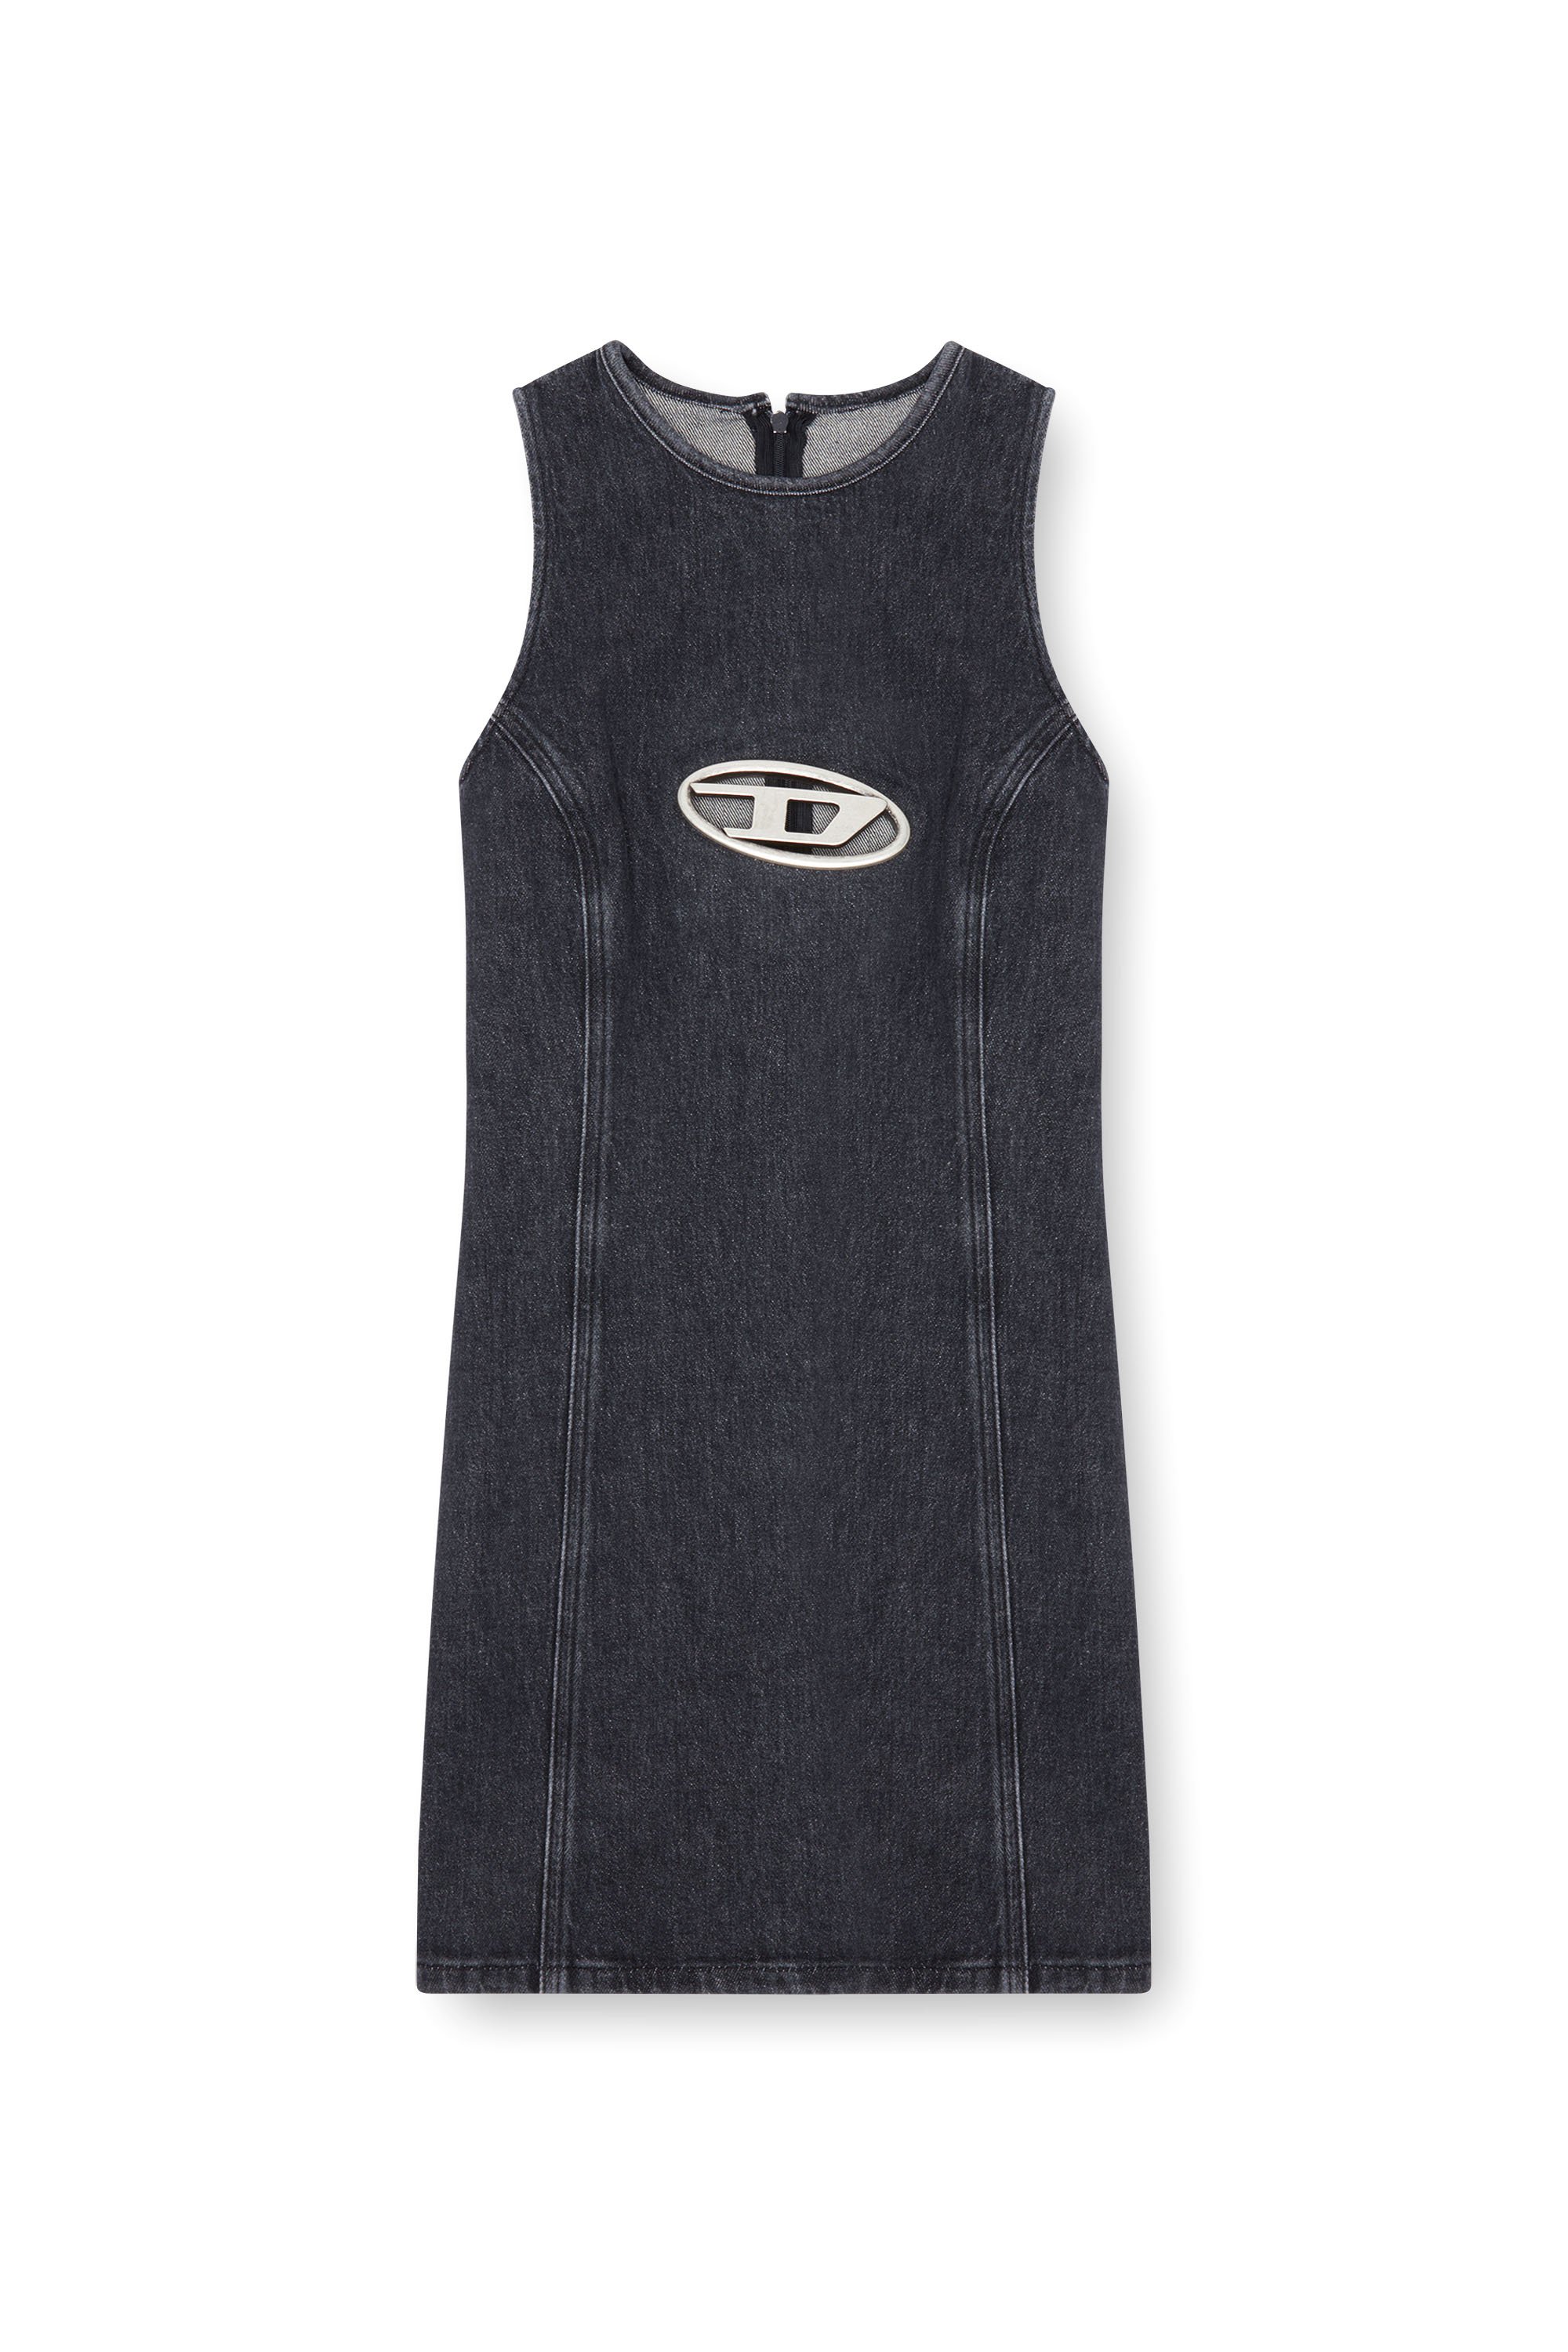 Diesel - DE-FERRIZ-FSD, Female Denim mini dress with Oval D plaque in Black - Image 4